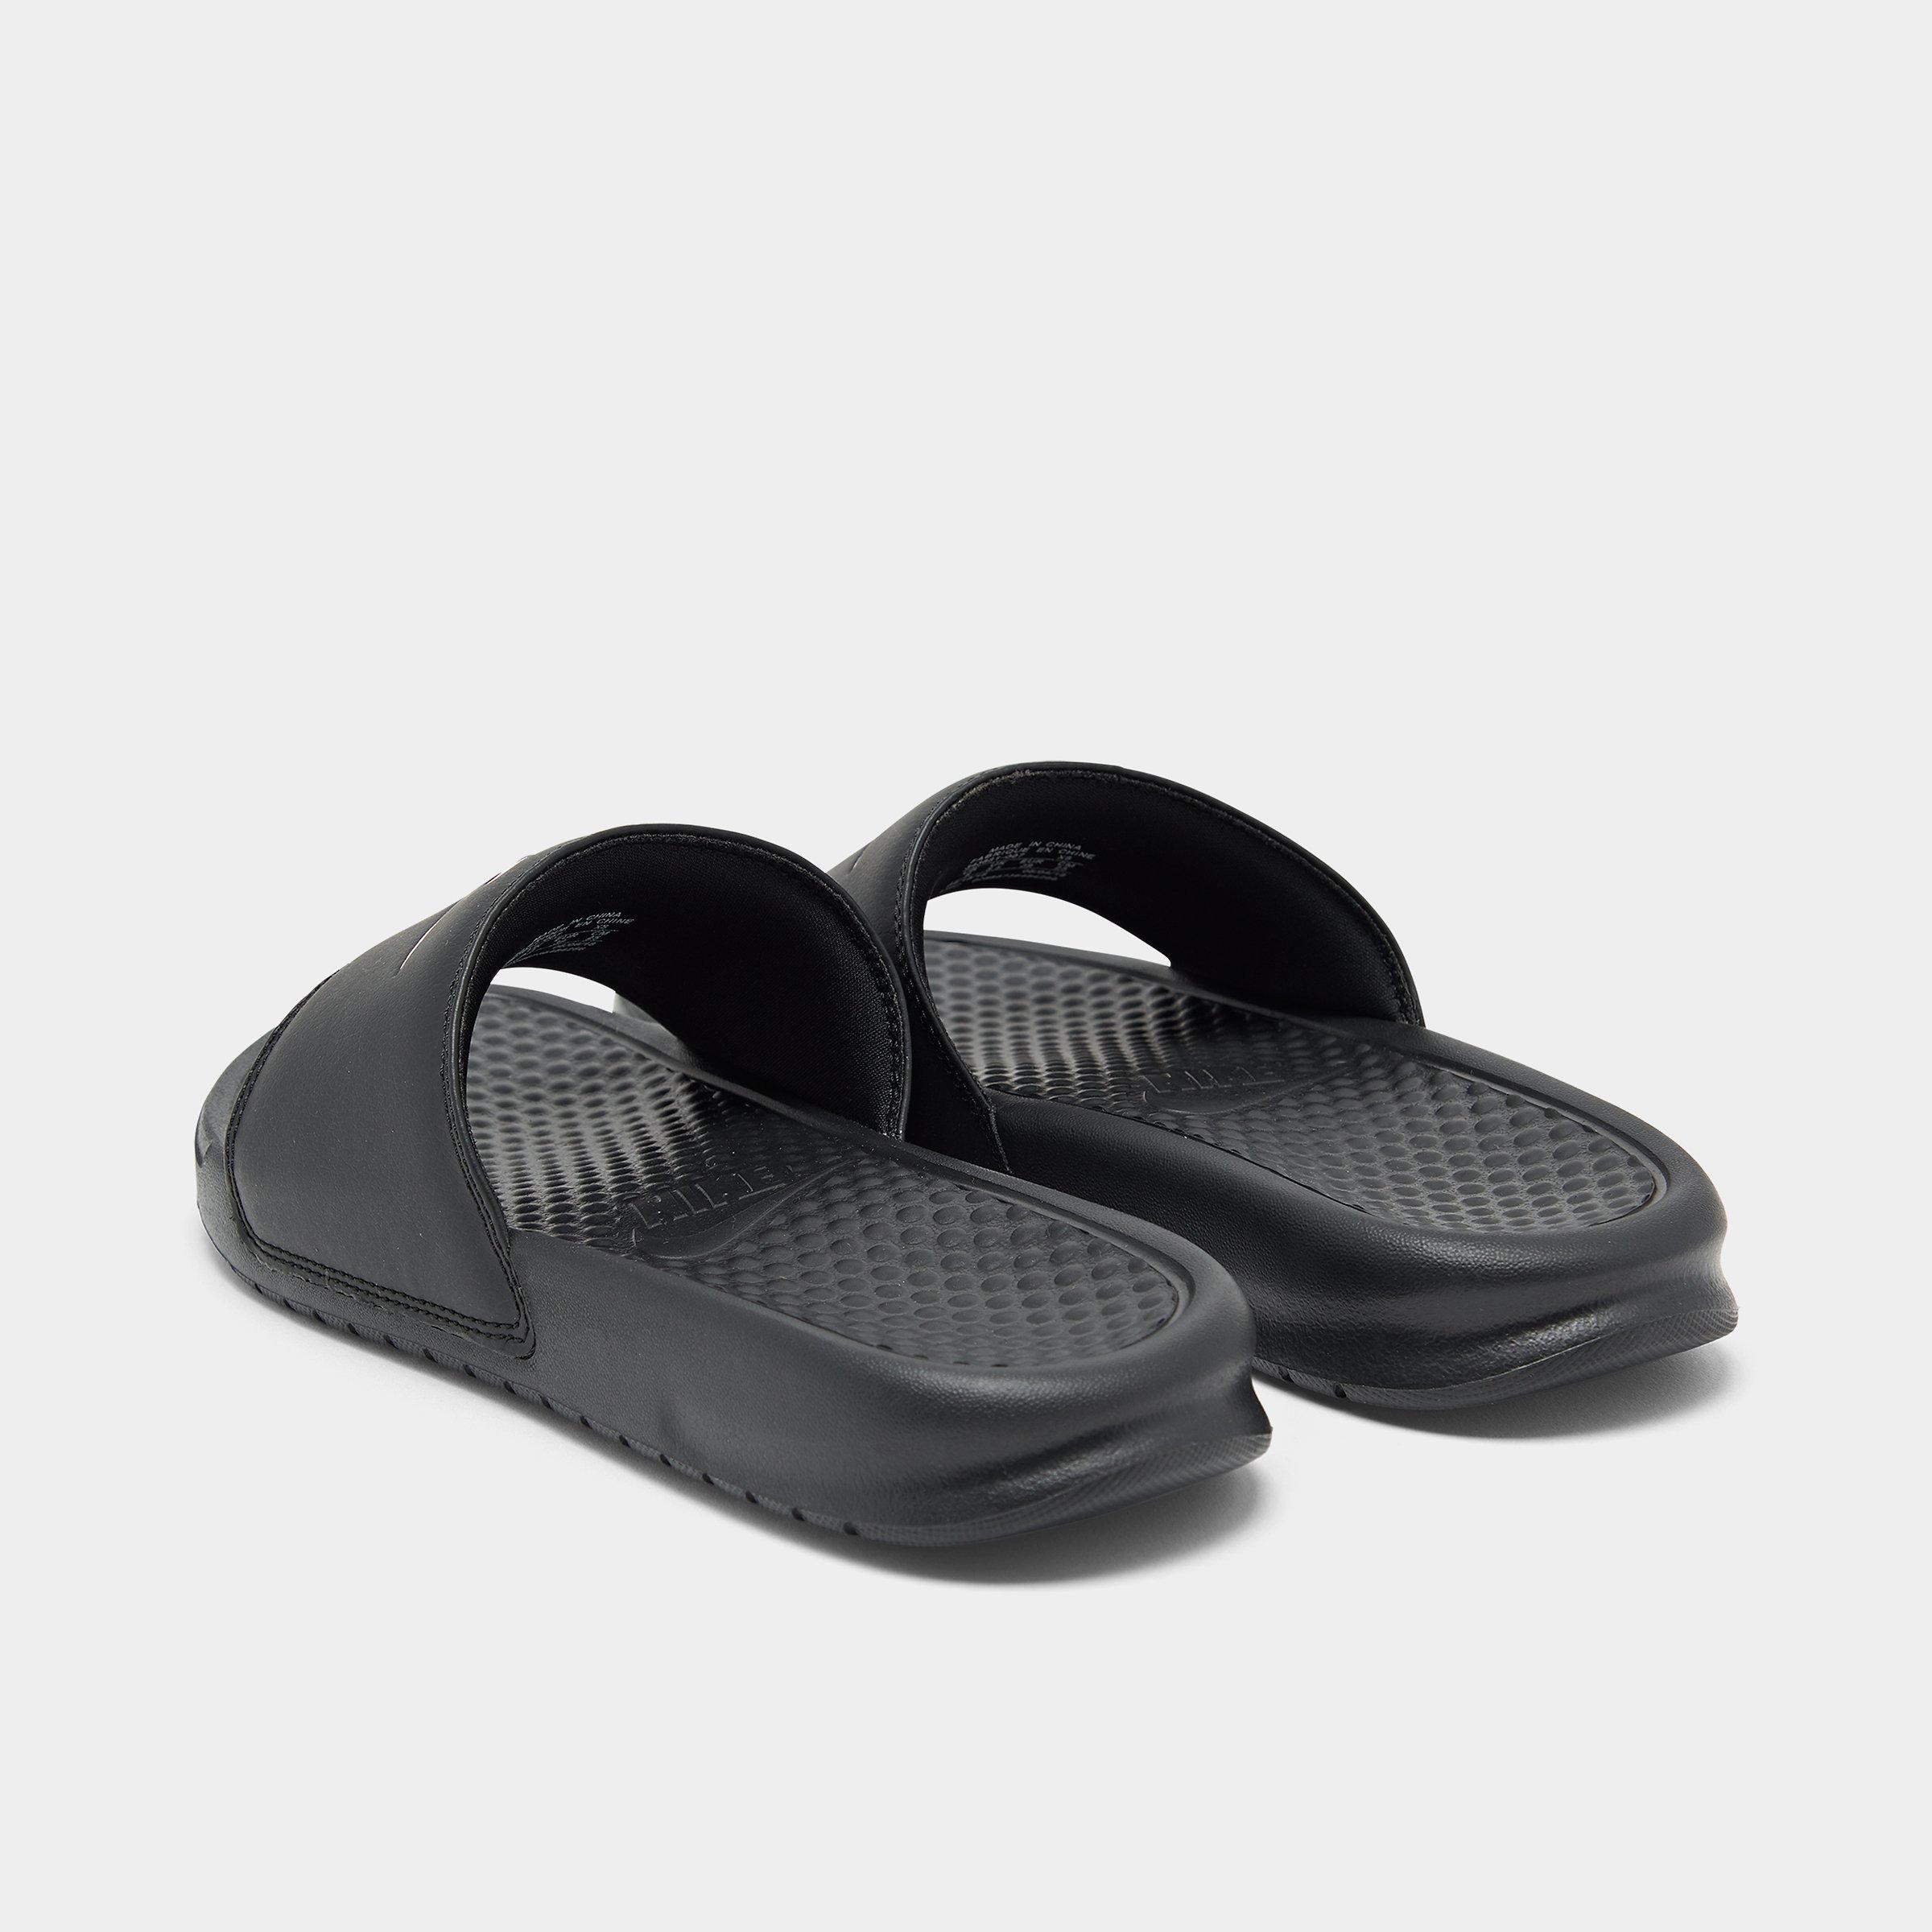 women's nike benassi just do it metallic slide sandals